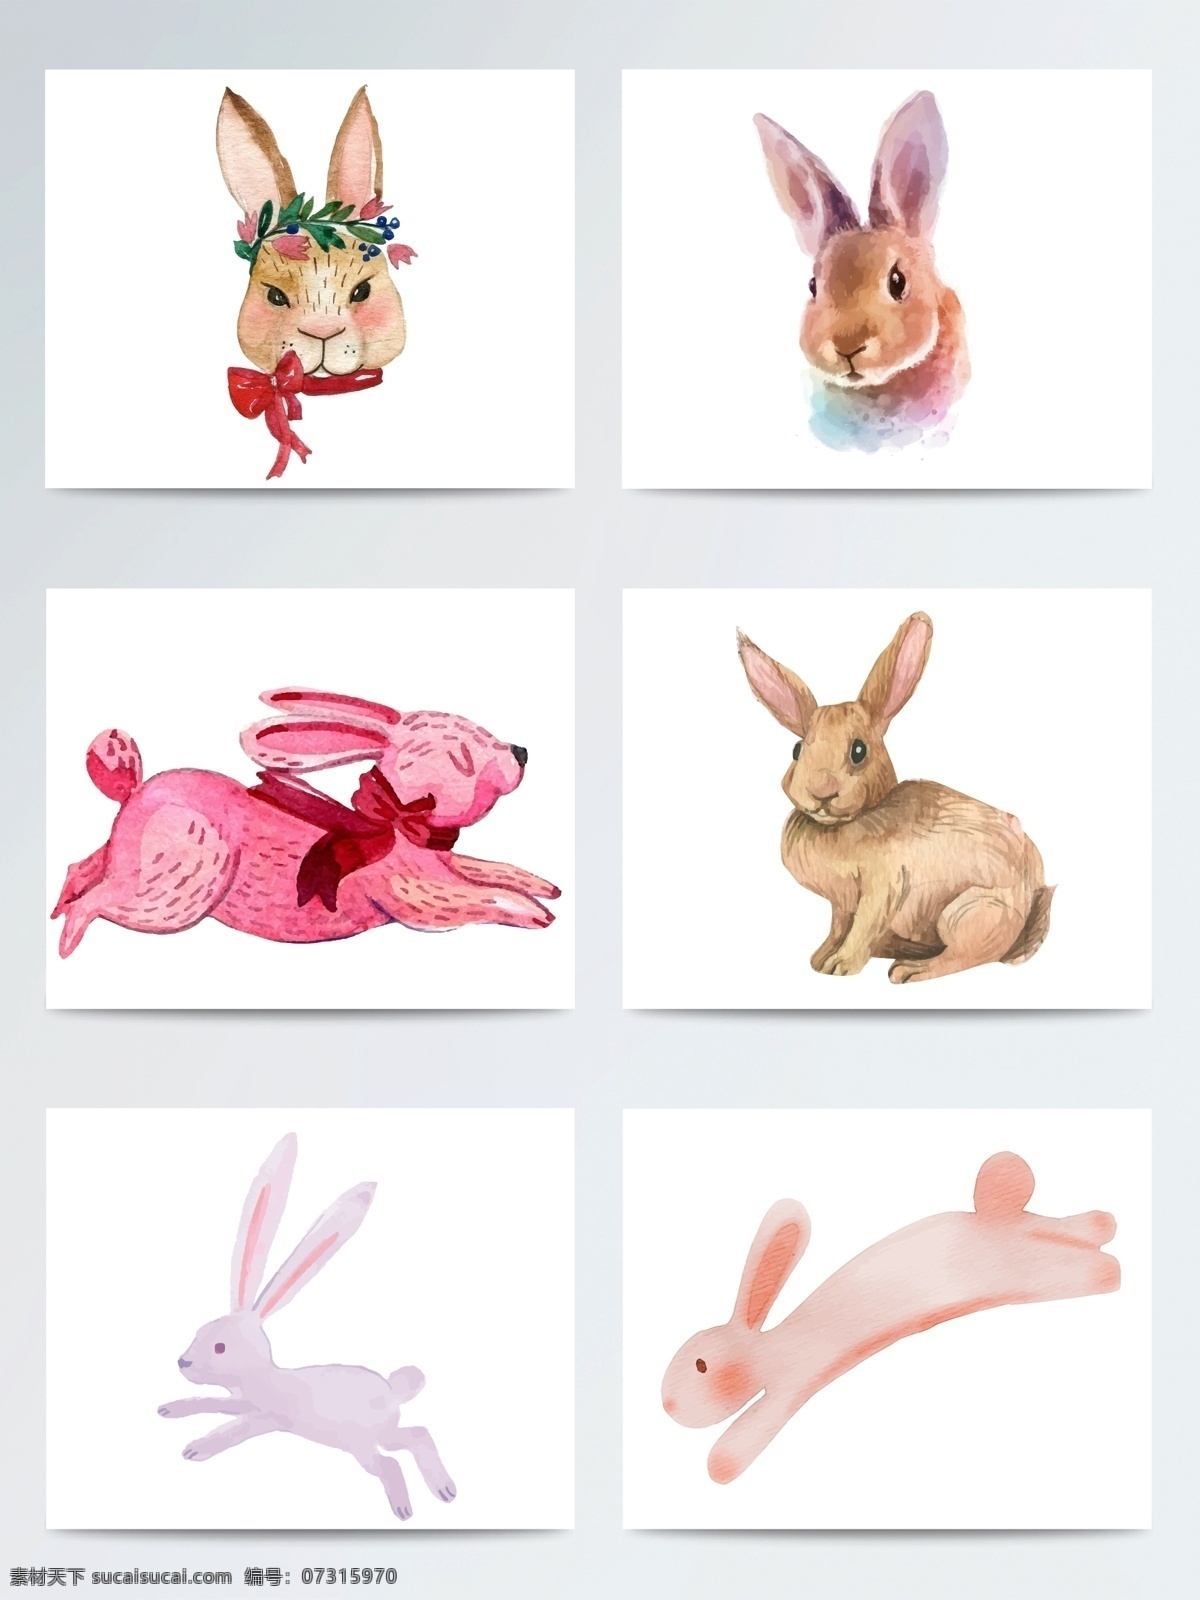 高质量 水彩 手绘 兔子 复活节 ai格式 卡通兔子 矢量素材 复活兔子 可爱兔子 手绘兔子 节日元素 水彩兔子